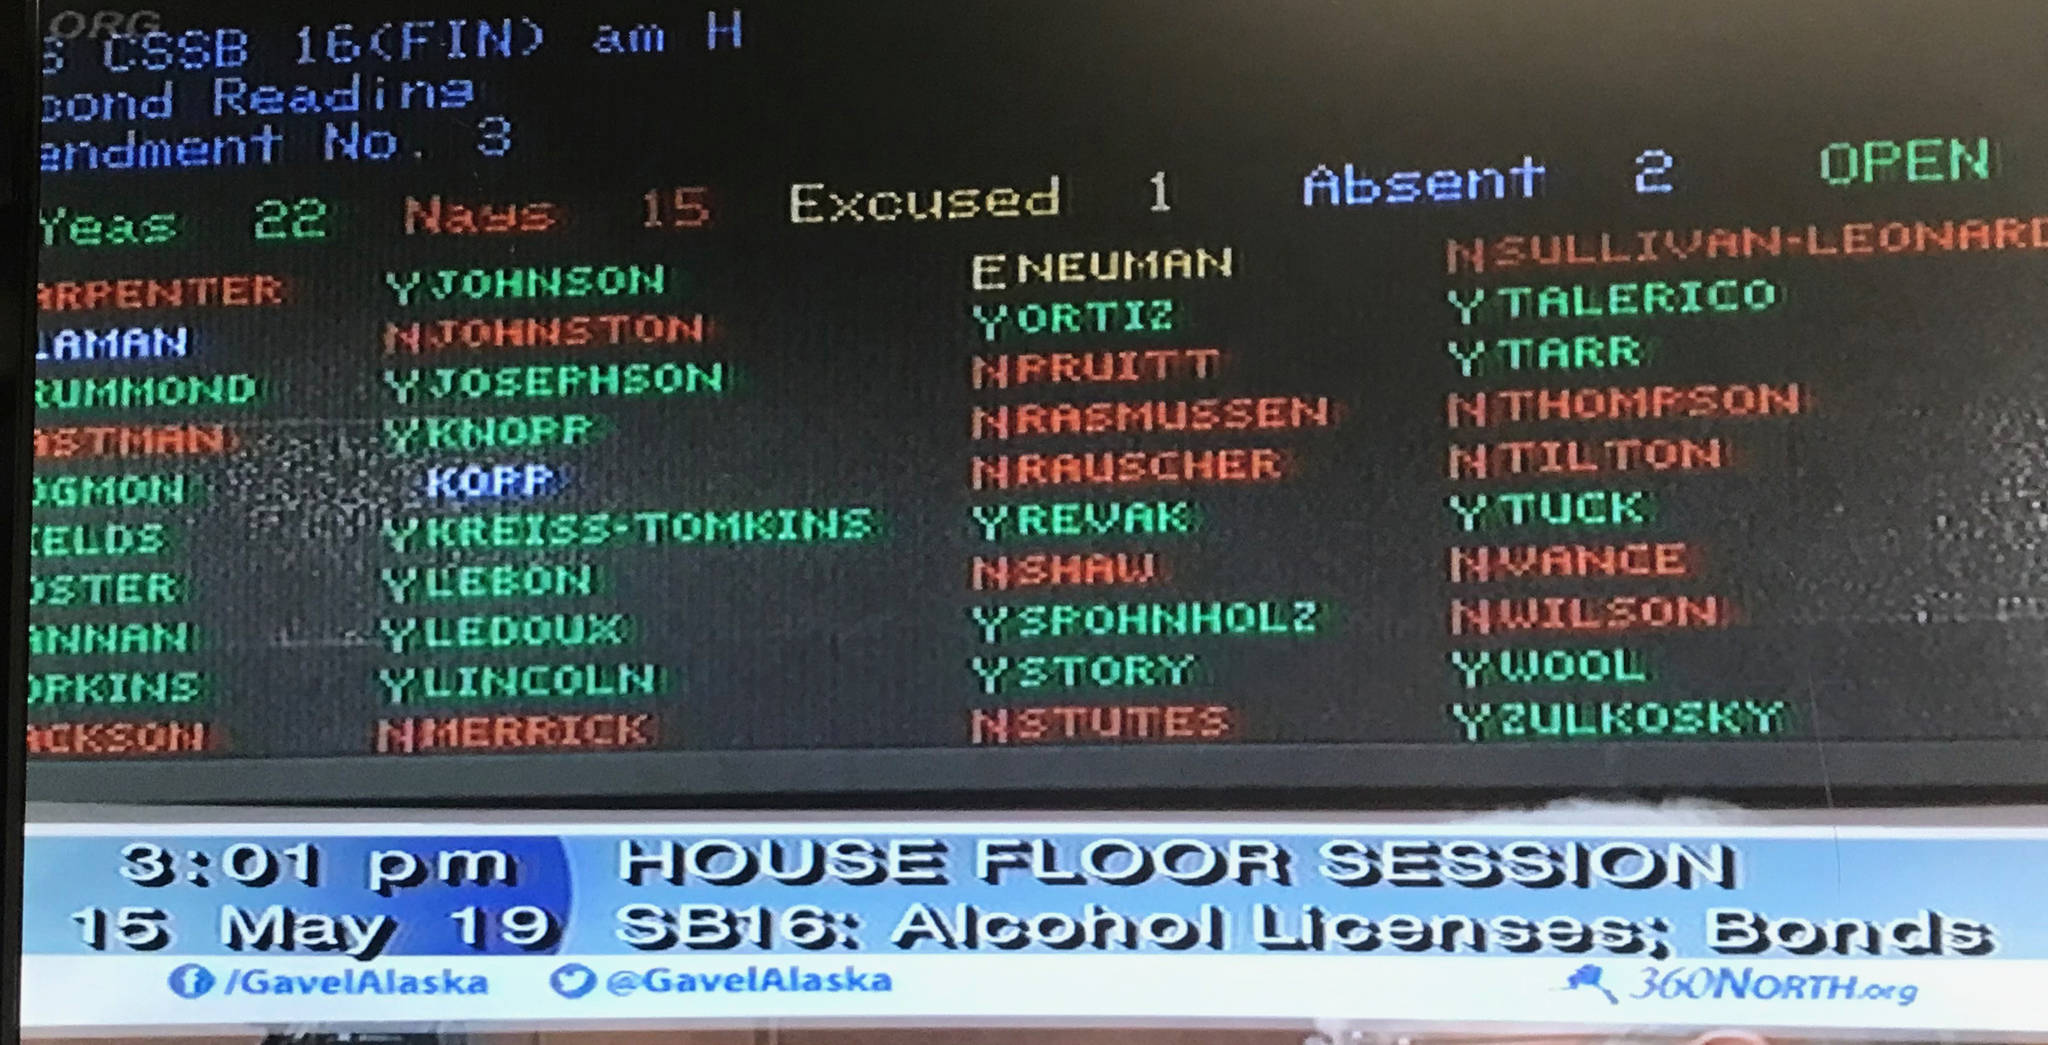 The vote on Senate Bill 16.